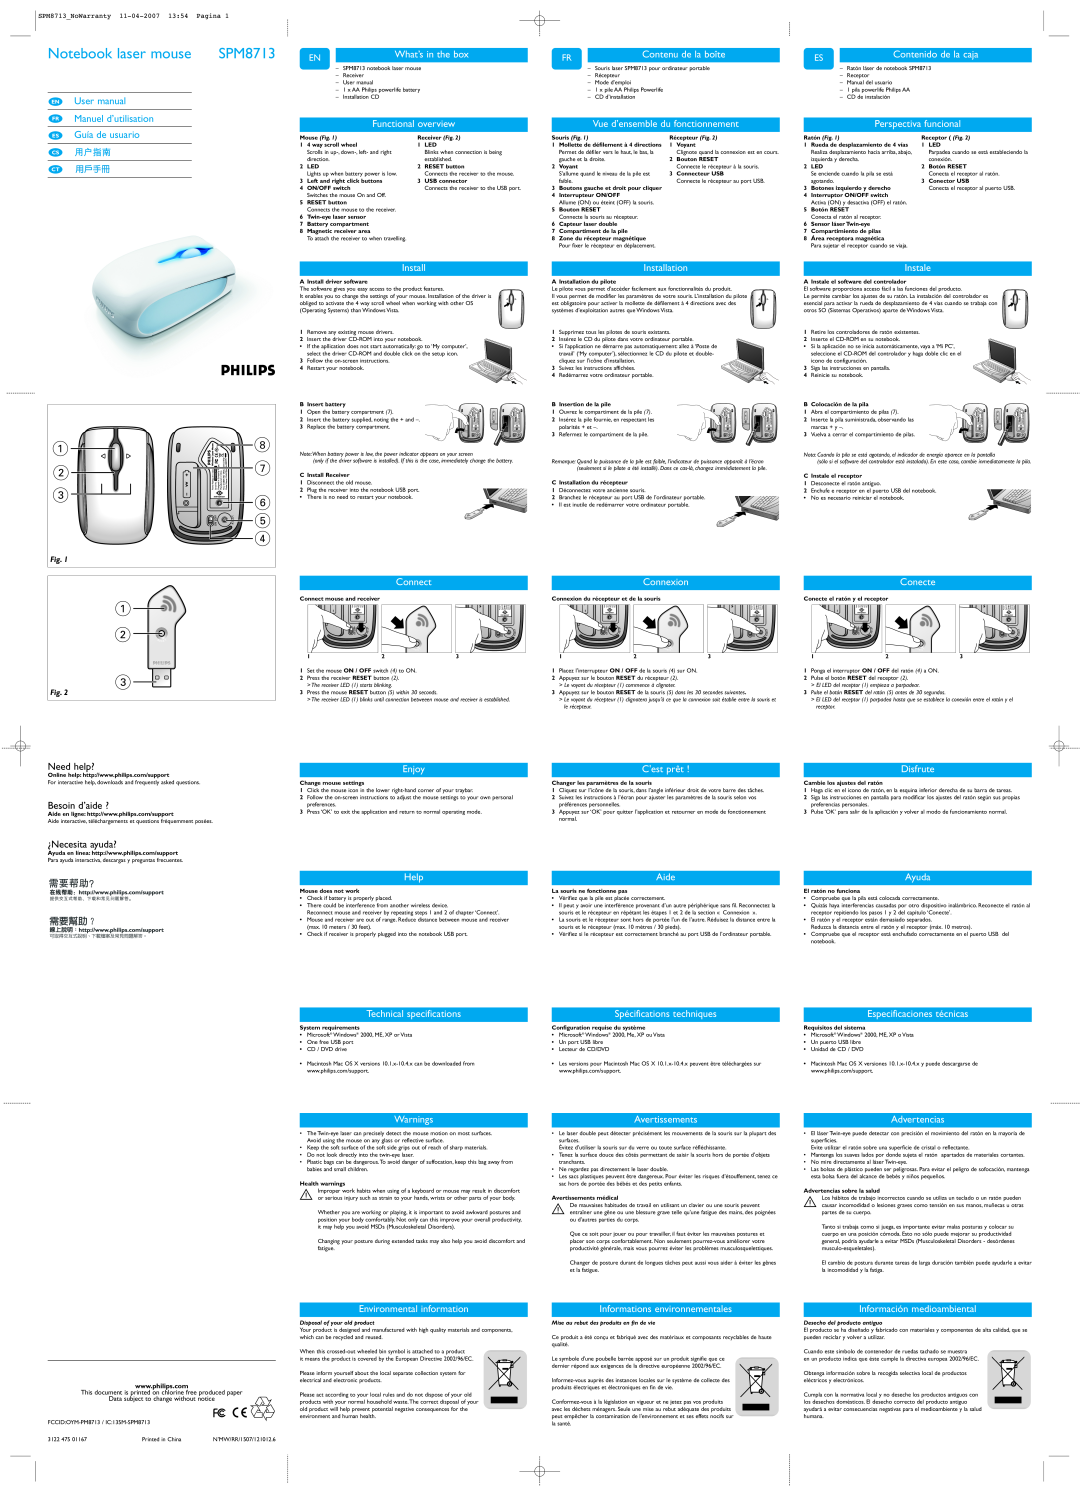 Philips SPM8713 user manual Notebook laser mouse, What’s in the box, Contenu de la boîte, Contenido de la caja 